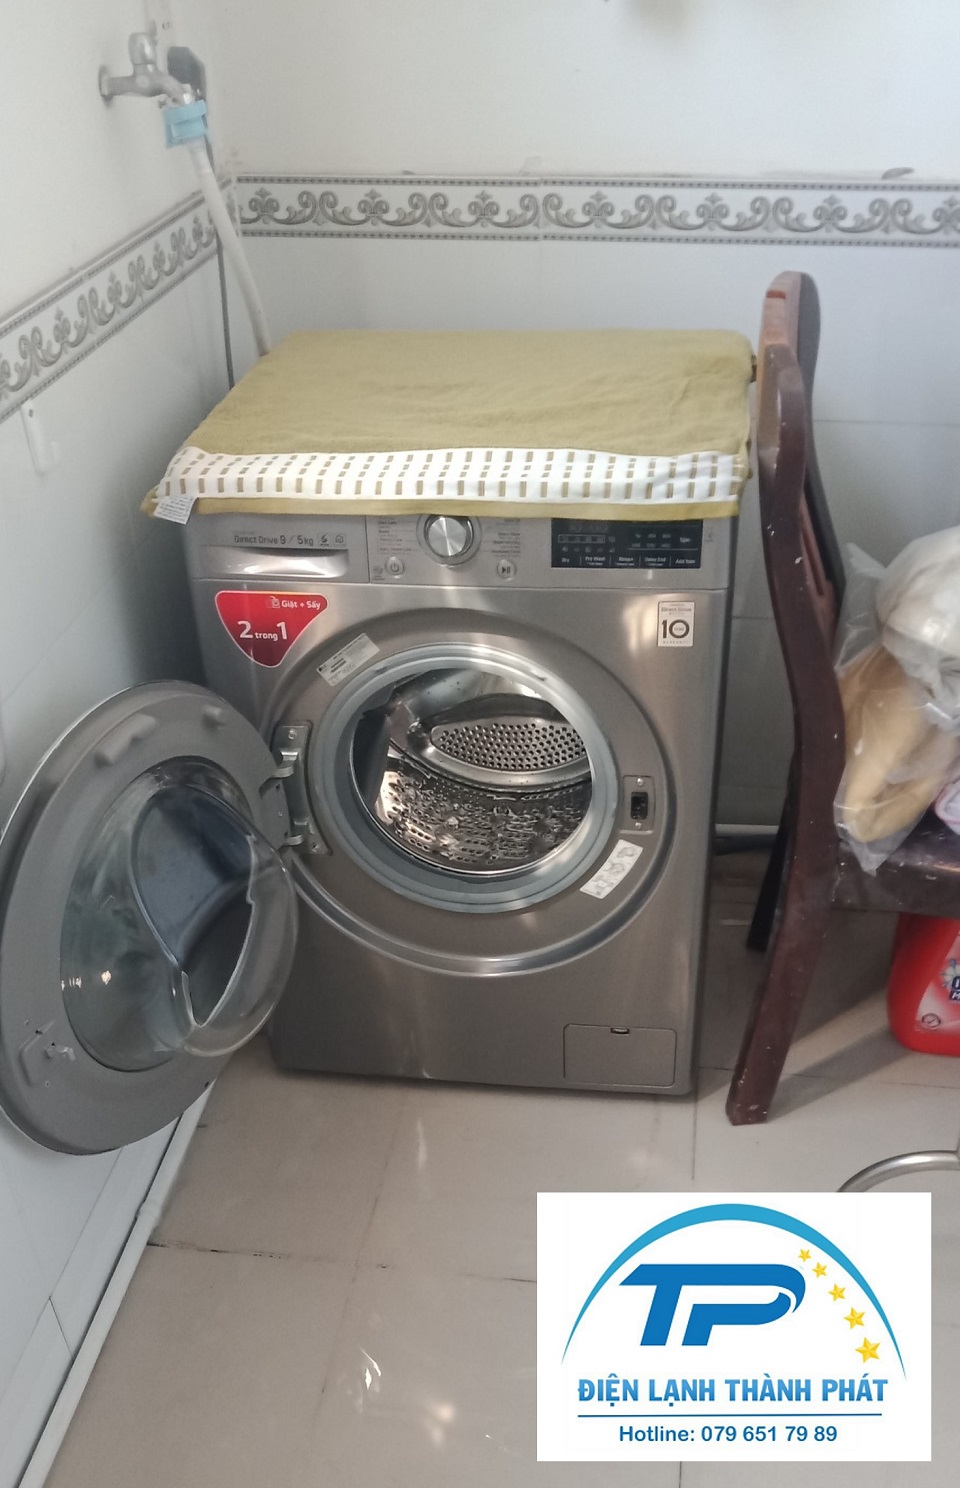 Hãy kiểm tra máy giặt thường xuyên để đảm bảo thiết bị đang trạng tình trạng hoạt động tốt.